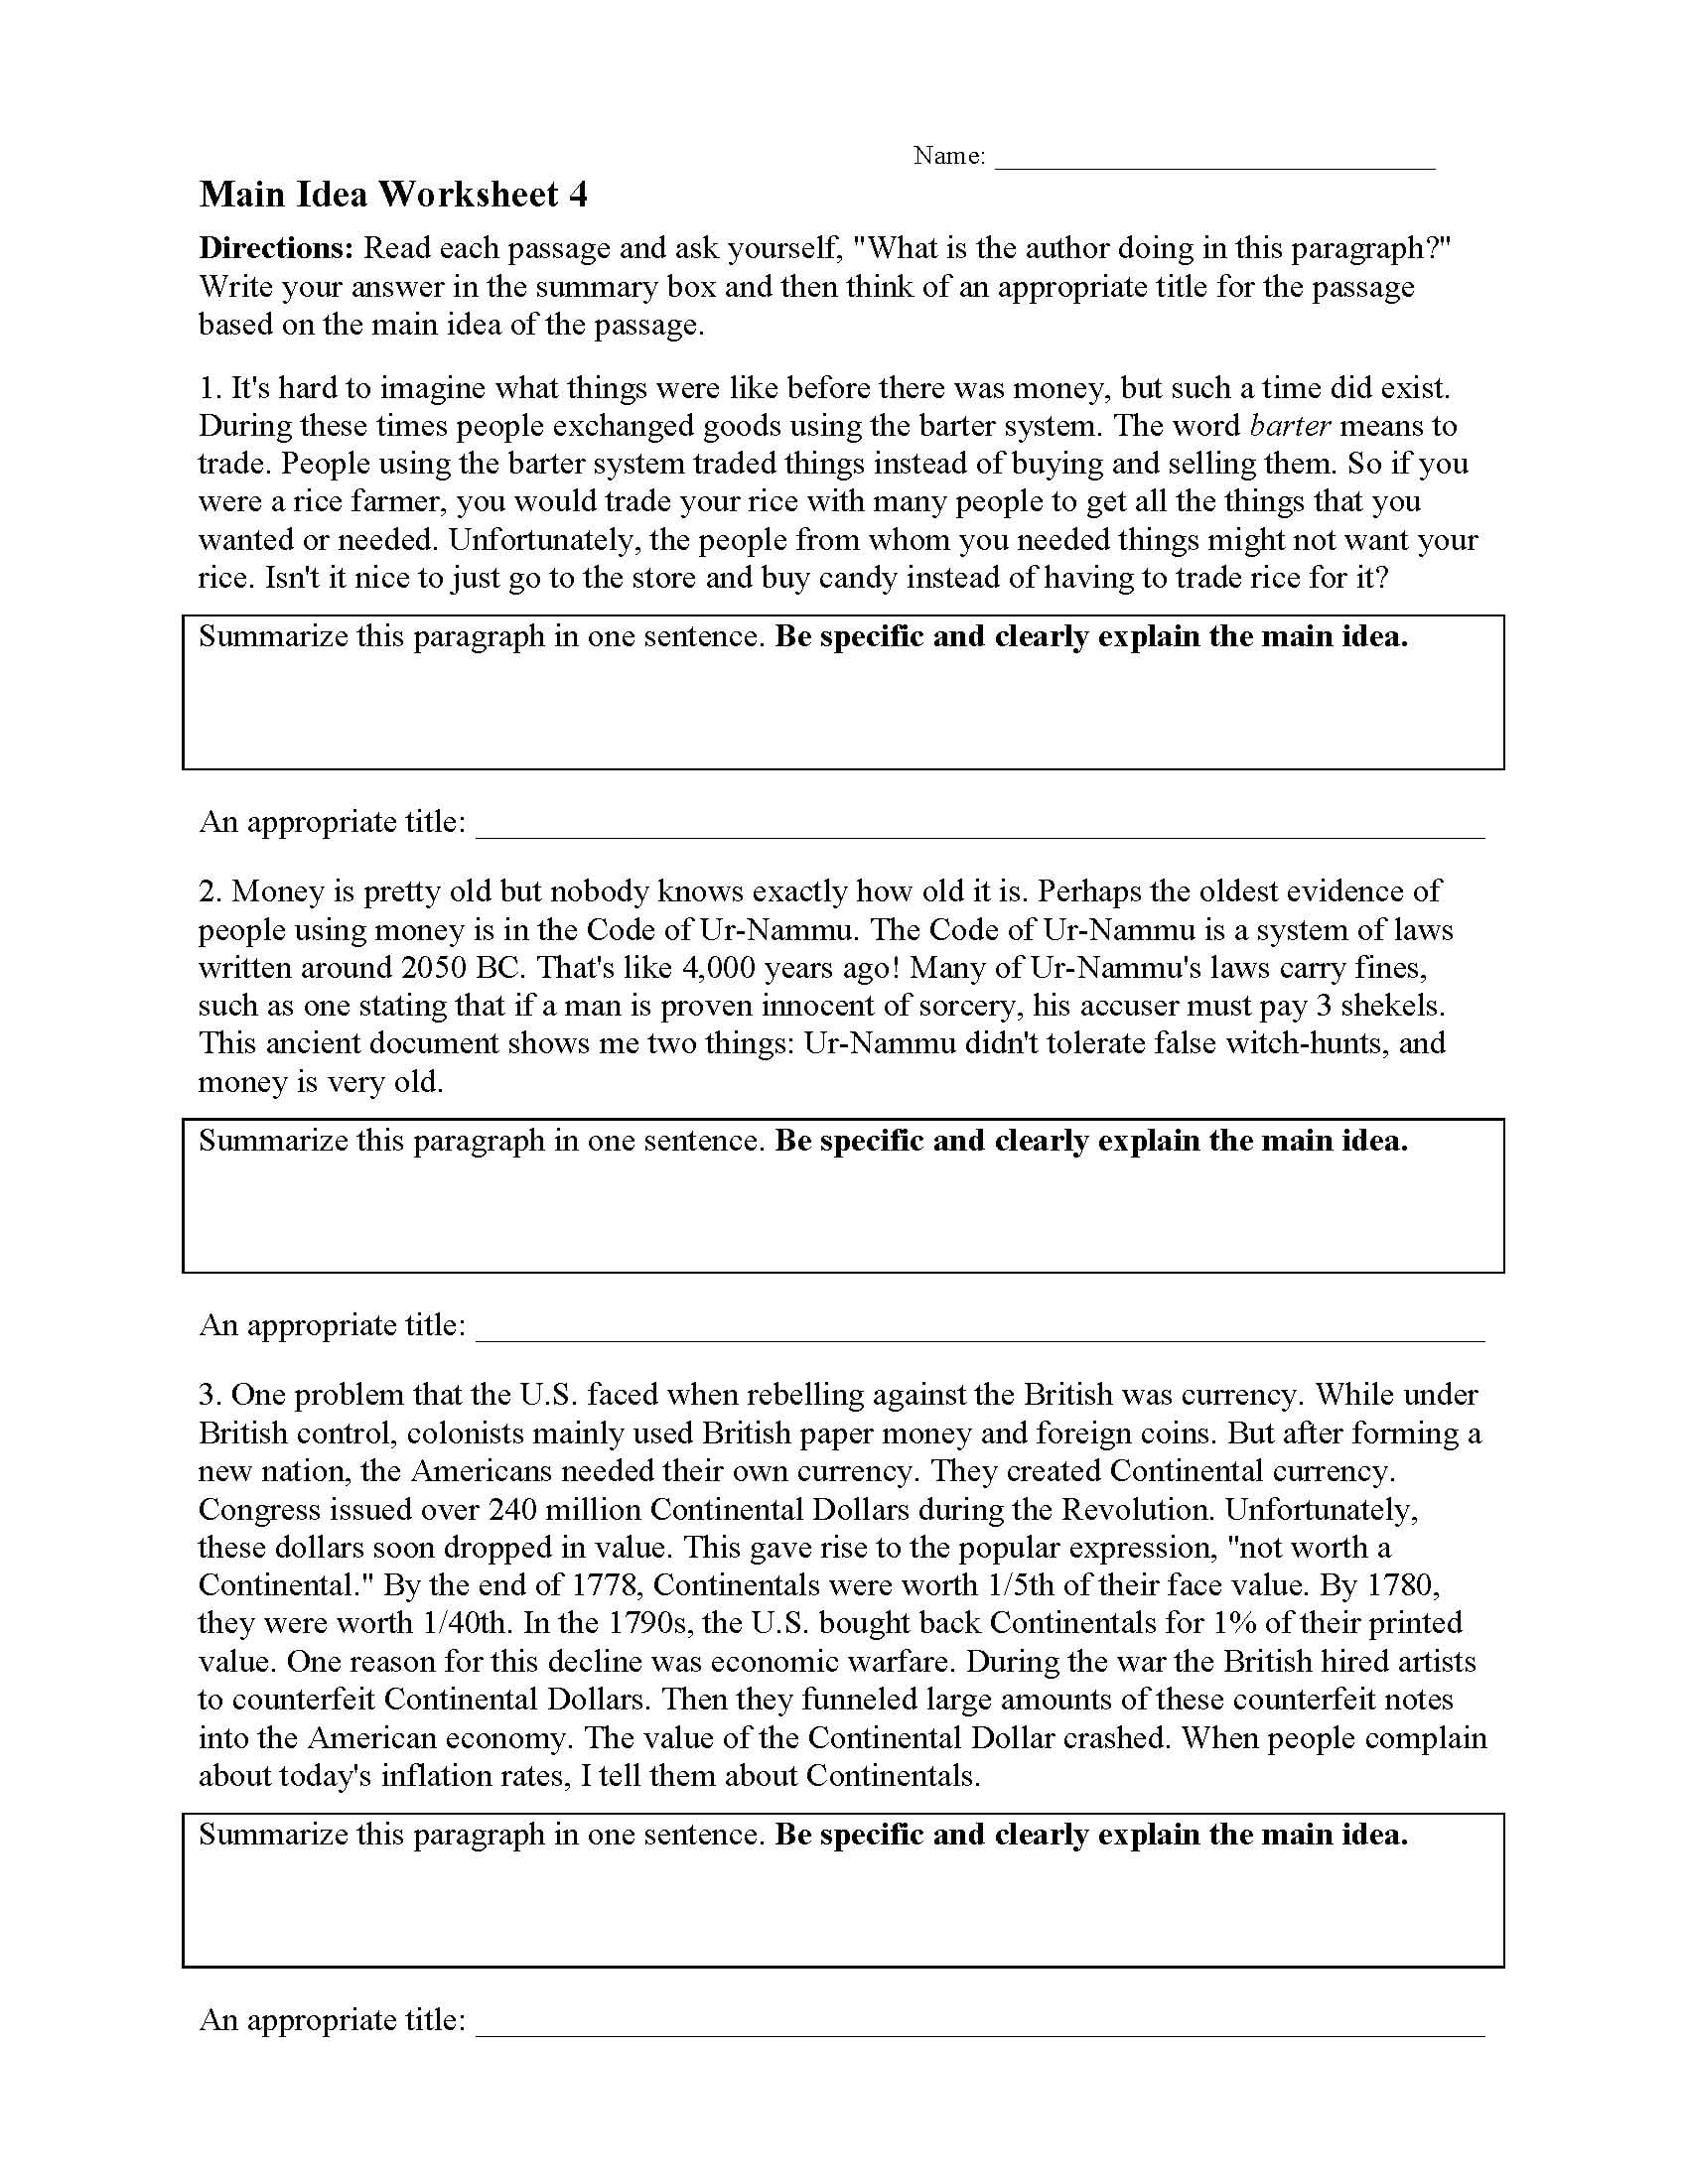 Main Idea Worksheet 4 Reading Activity